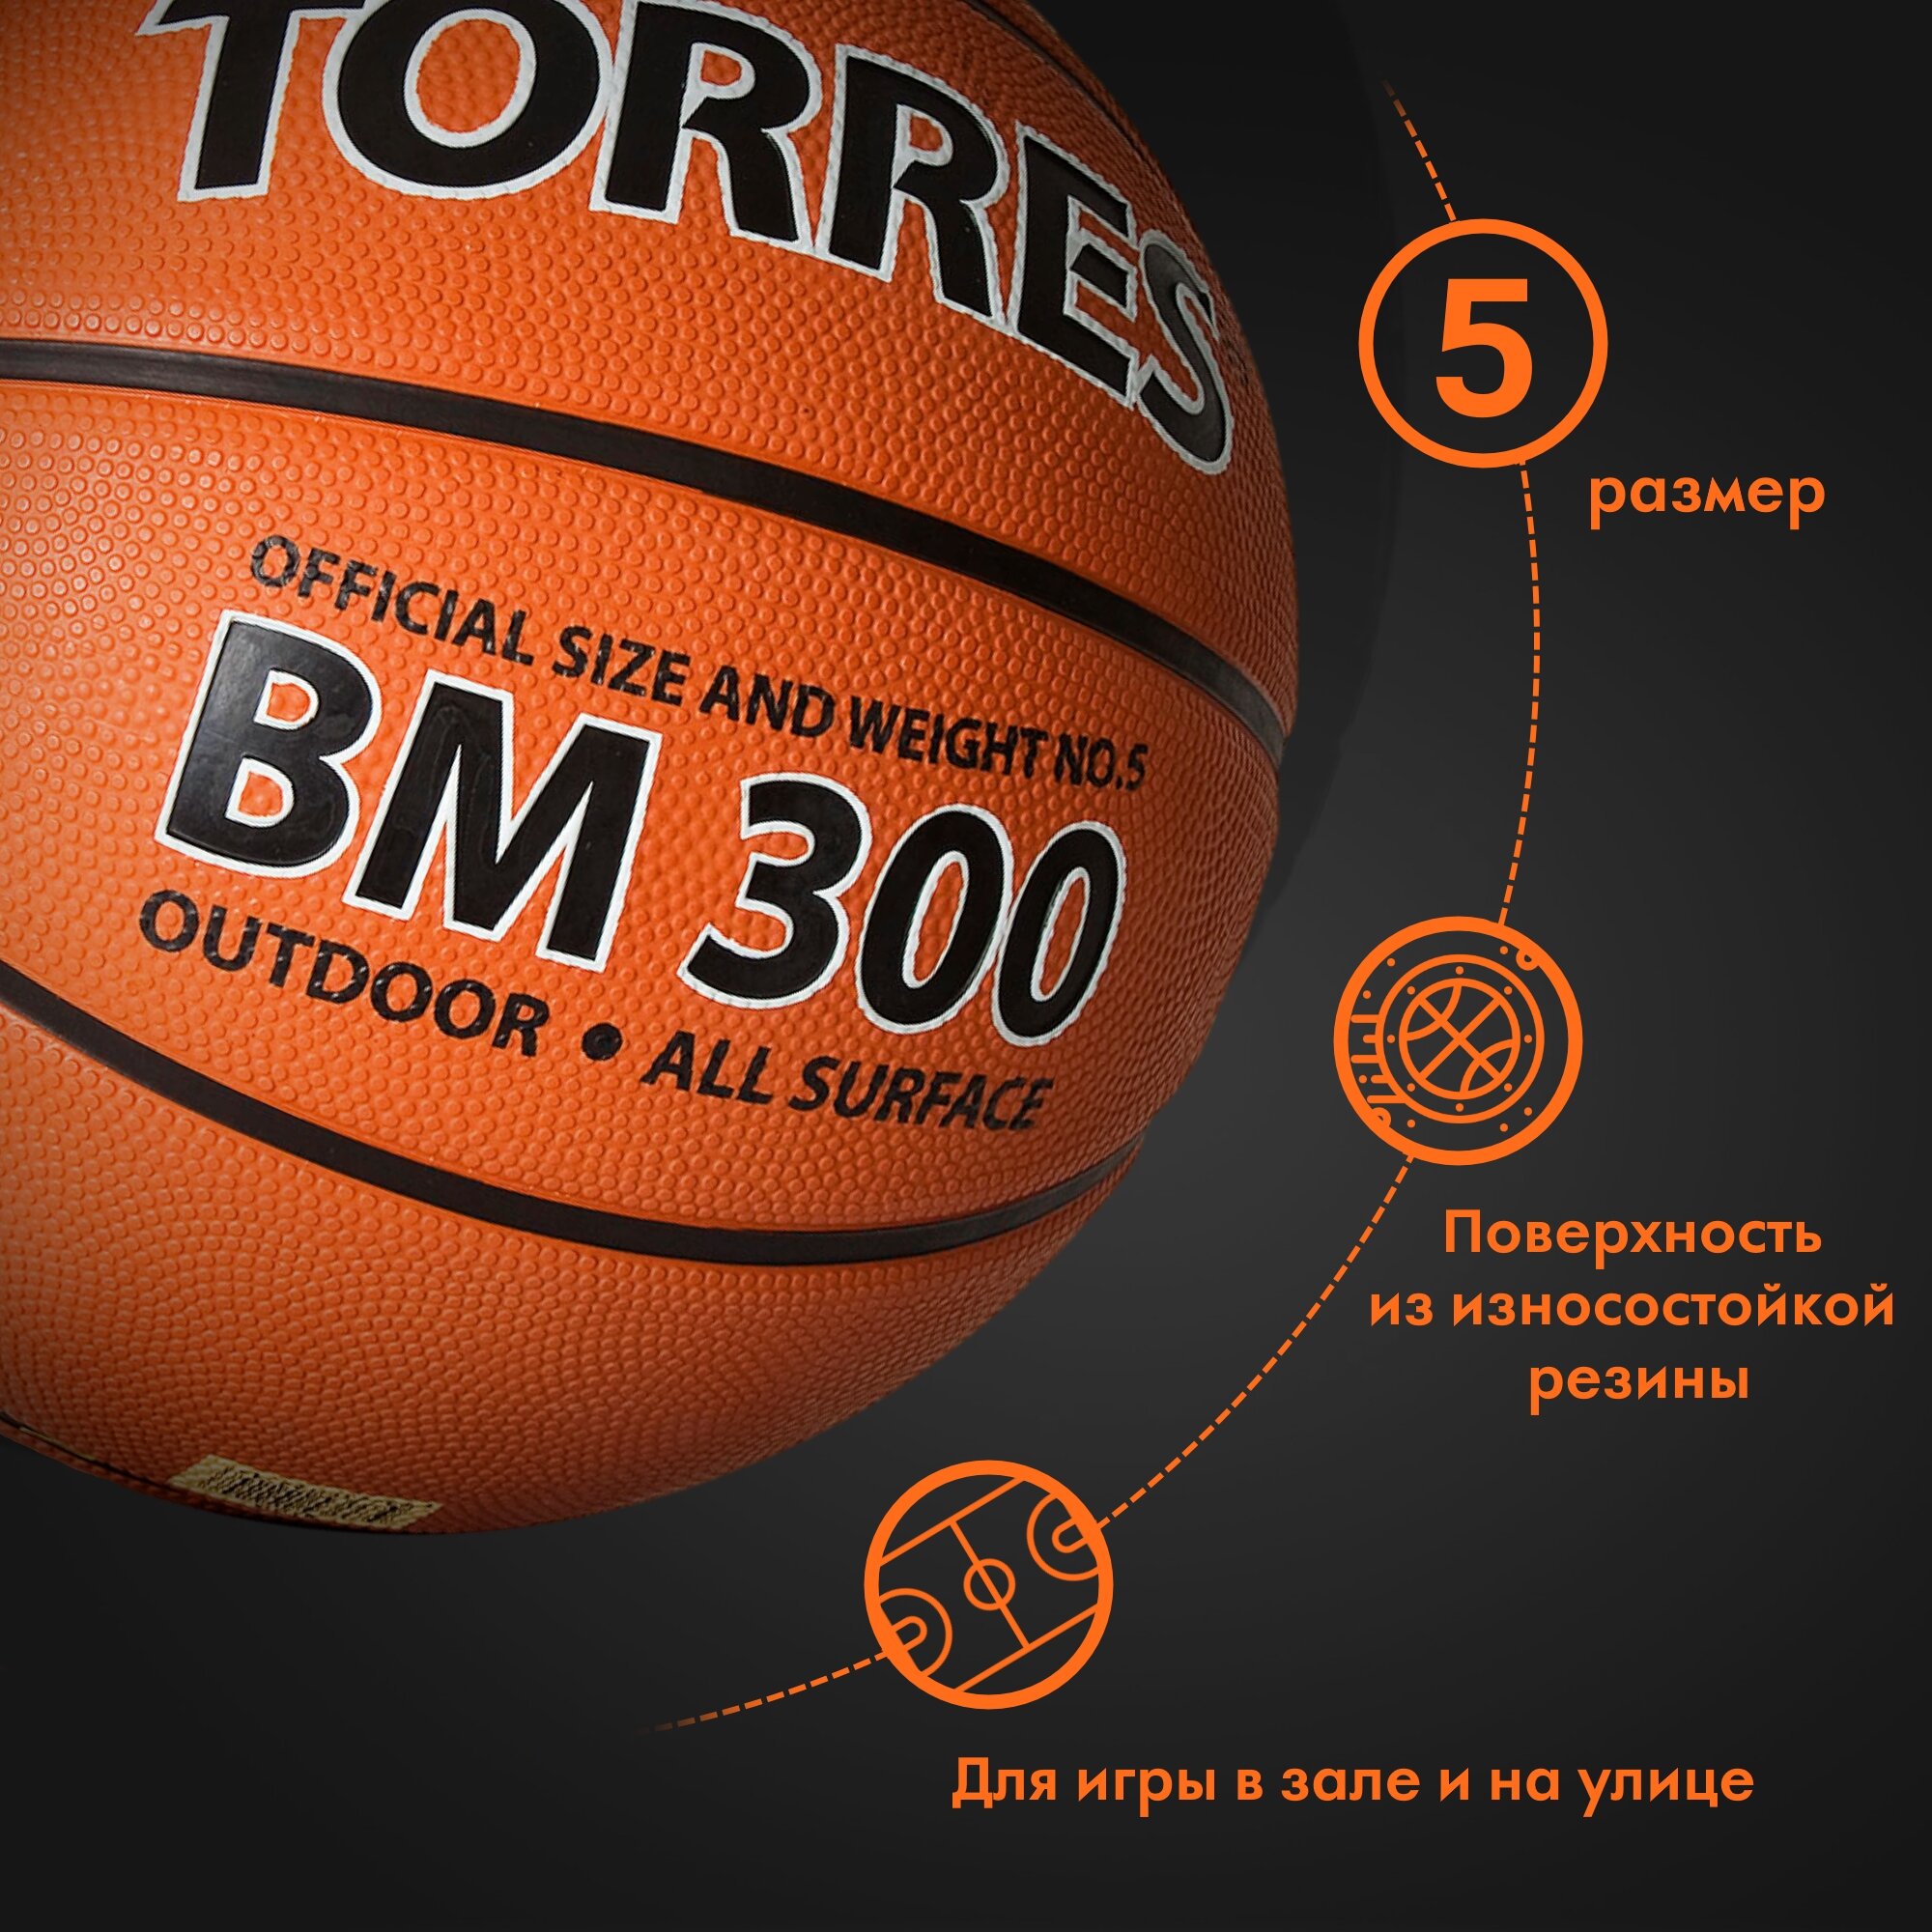 Баскетбольный мяч Torres - фото №2